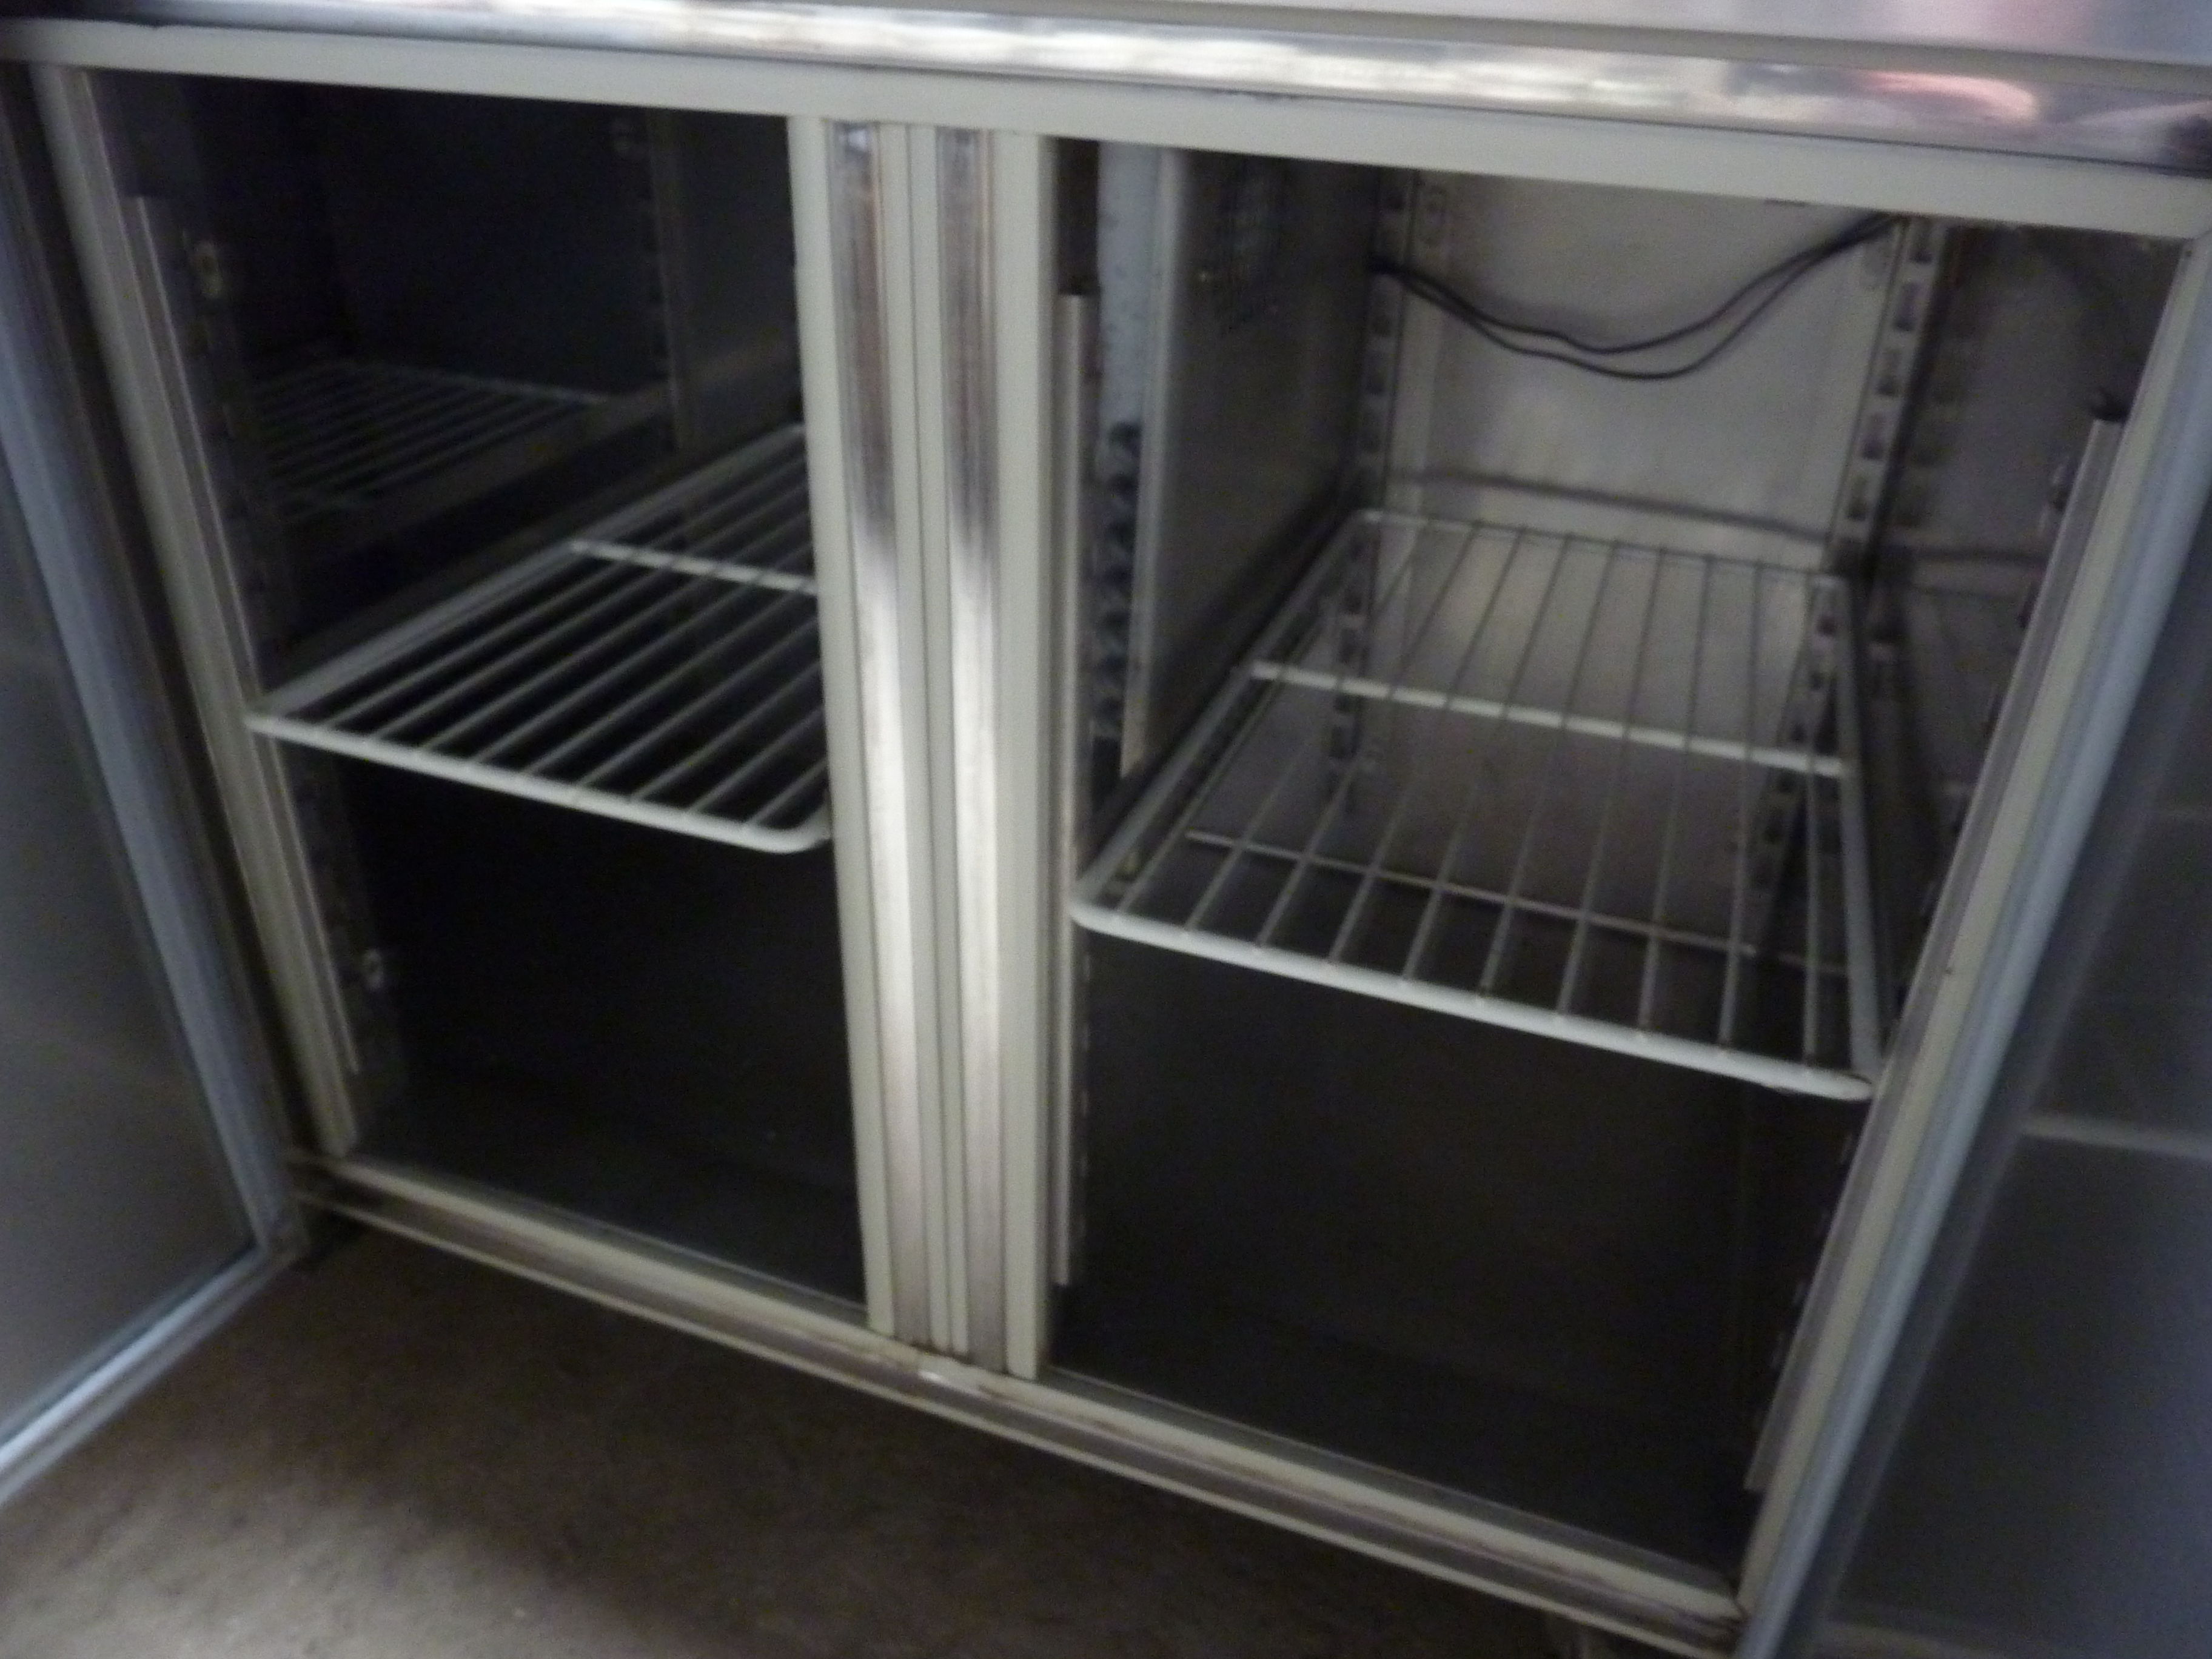 Inomax mobile stainless steel 3 door counter top fridge - Image 2 of 2